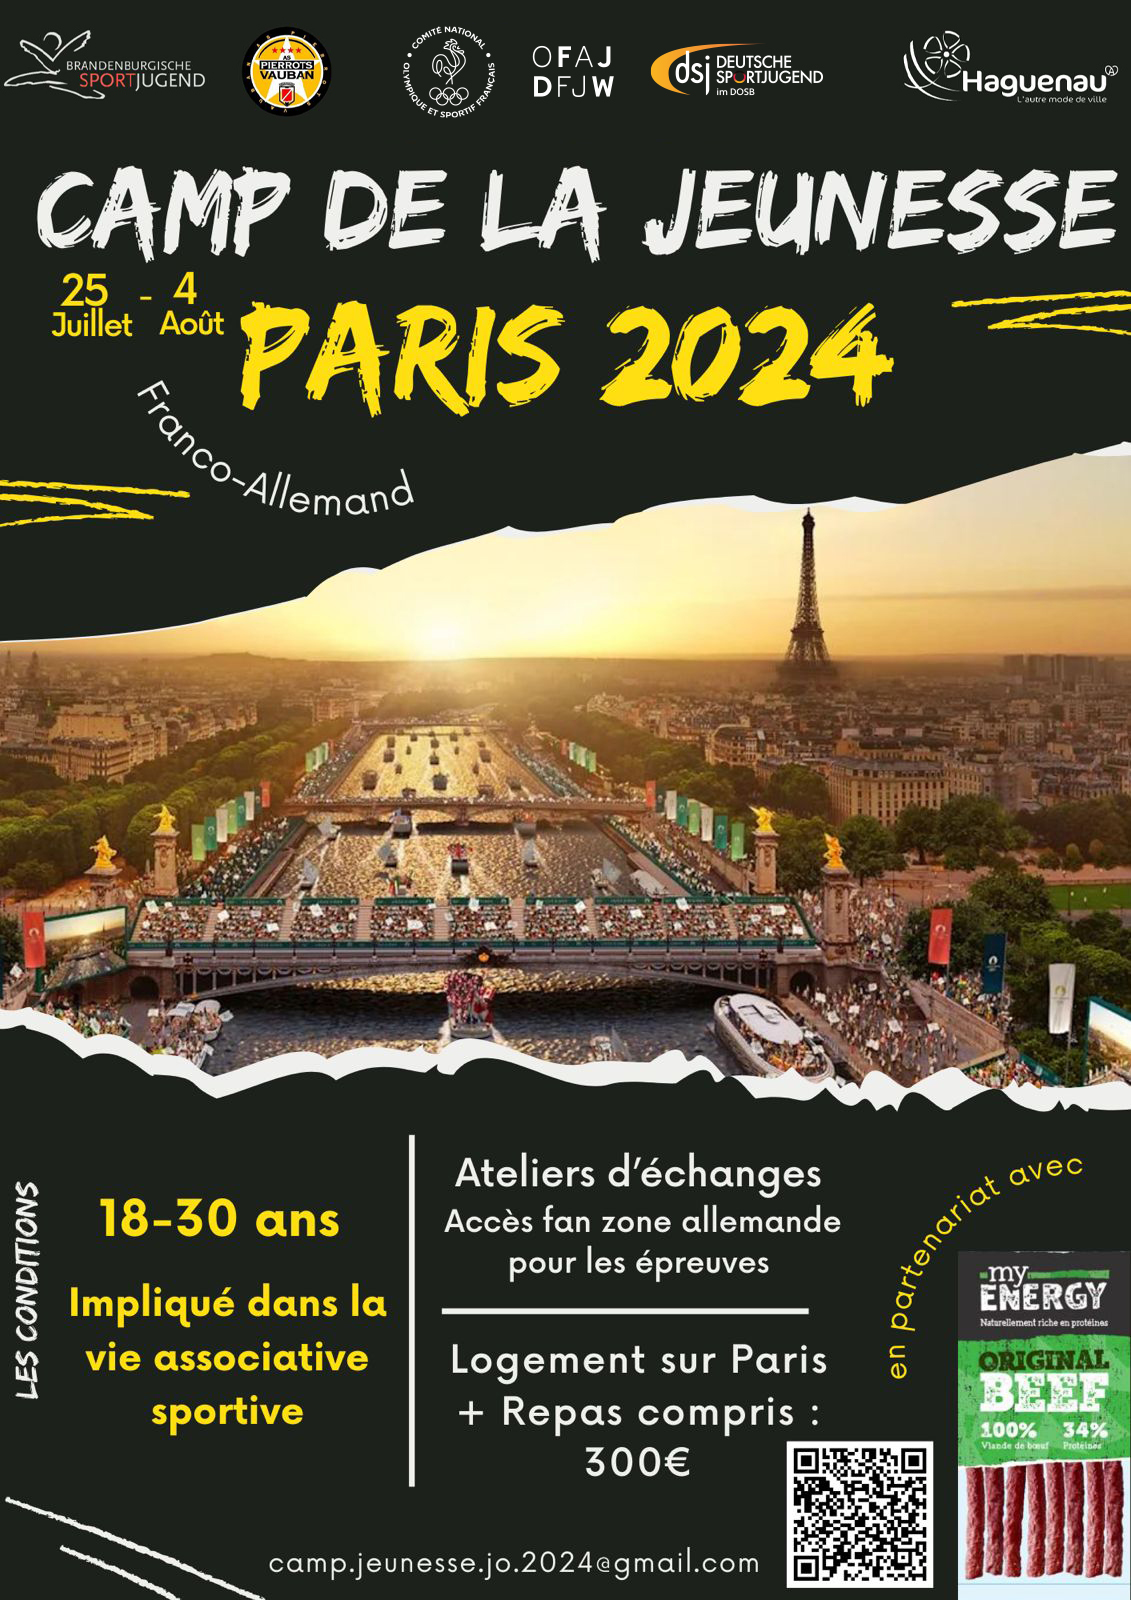 Camp de la jeunesse Paris 2024